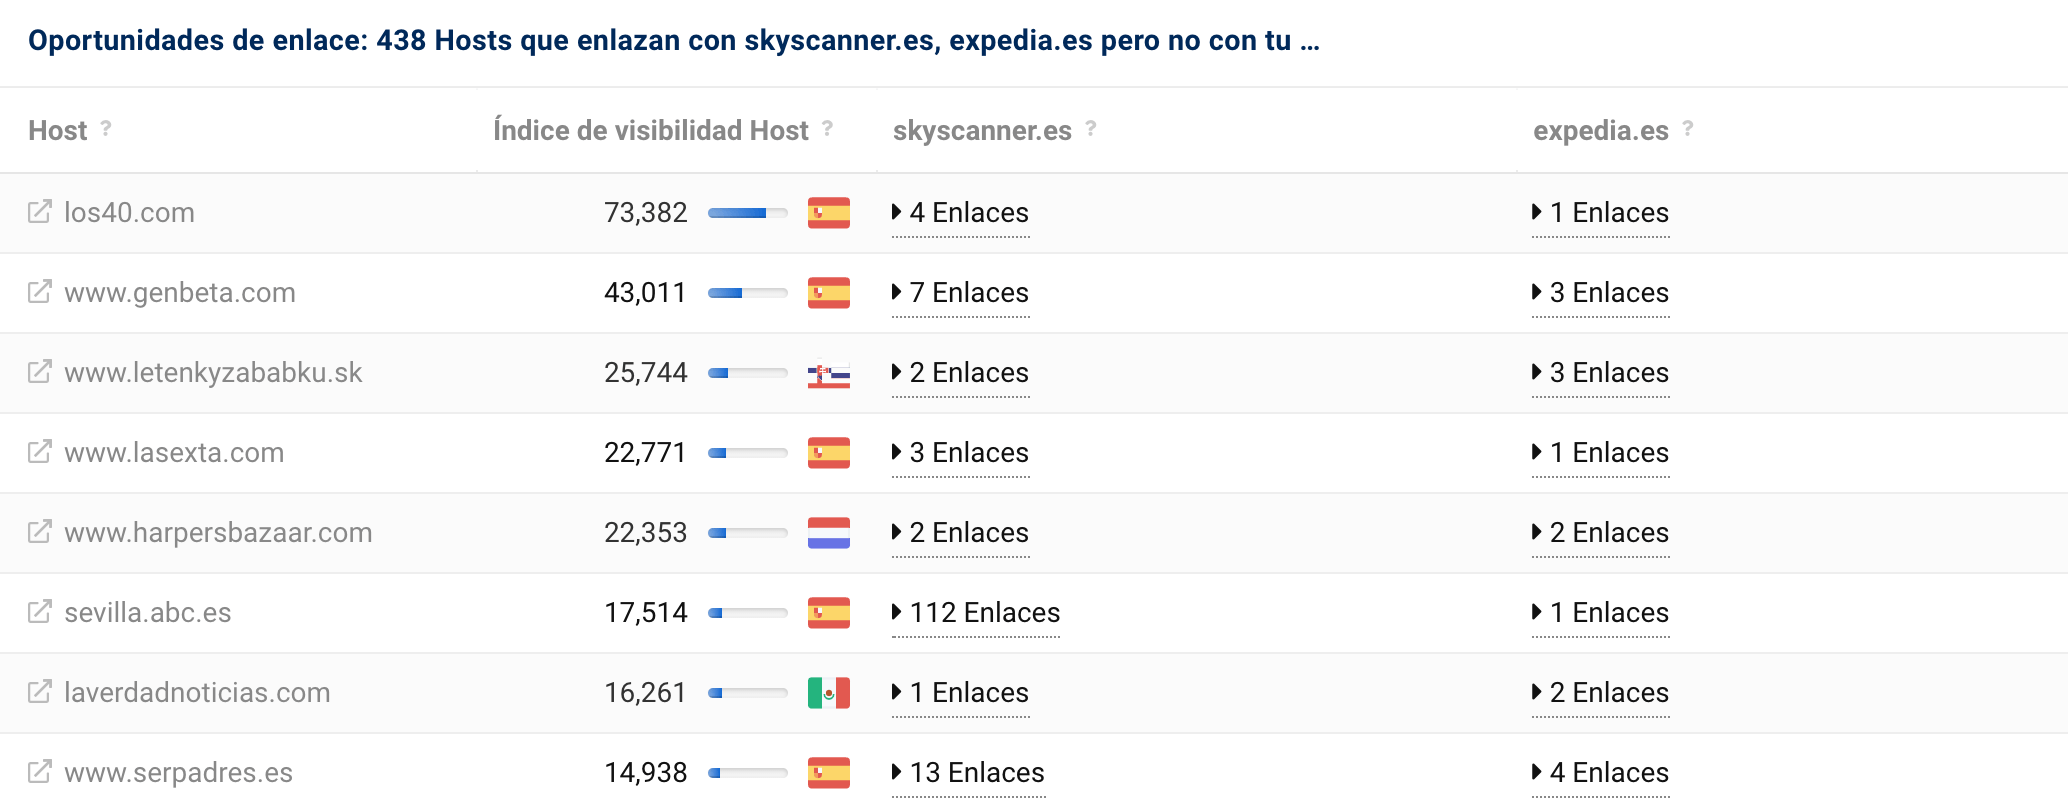 Oportunidades de enlace: hosts que enlazan con skyscanner.es, expedia.es pero no con edreams.es